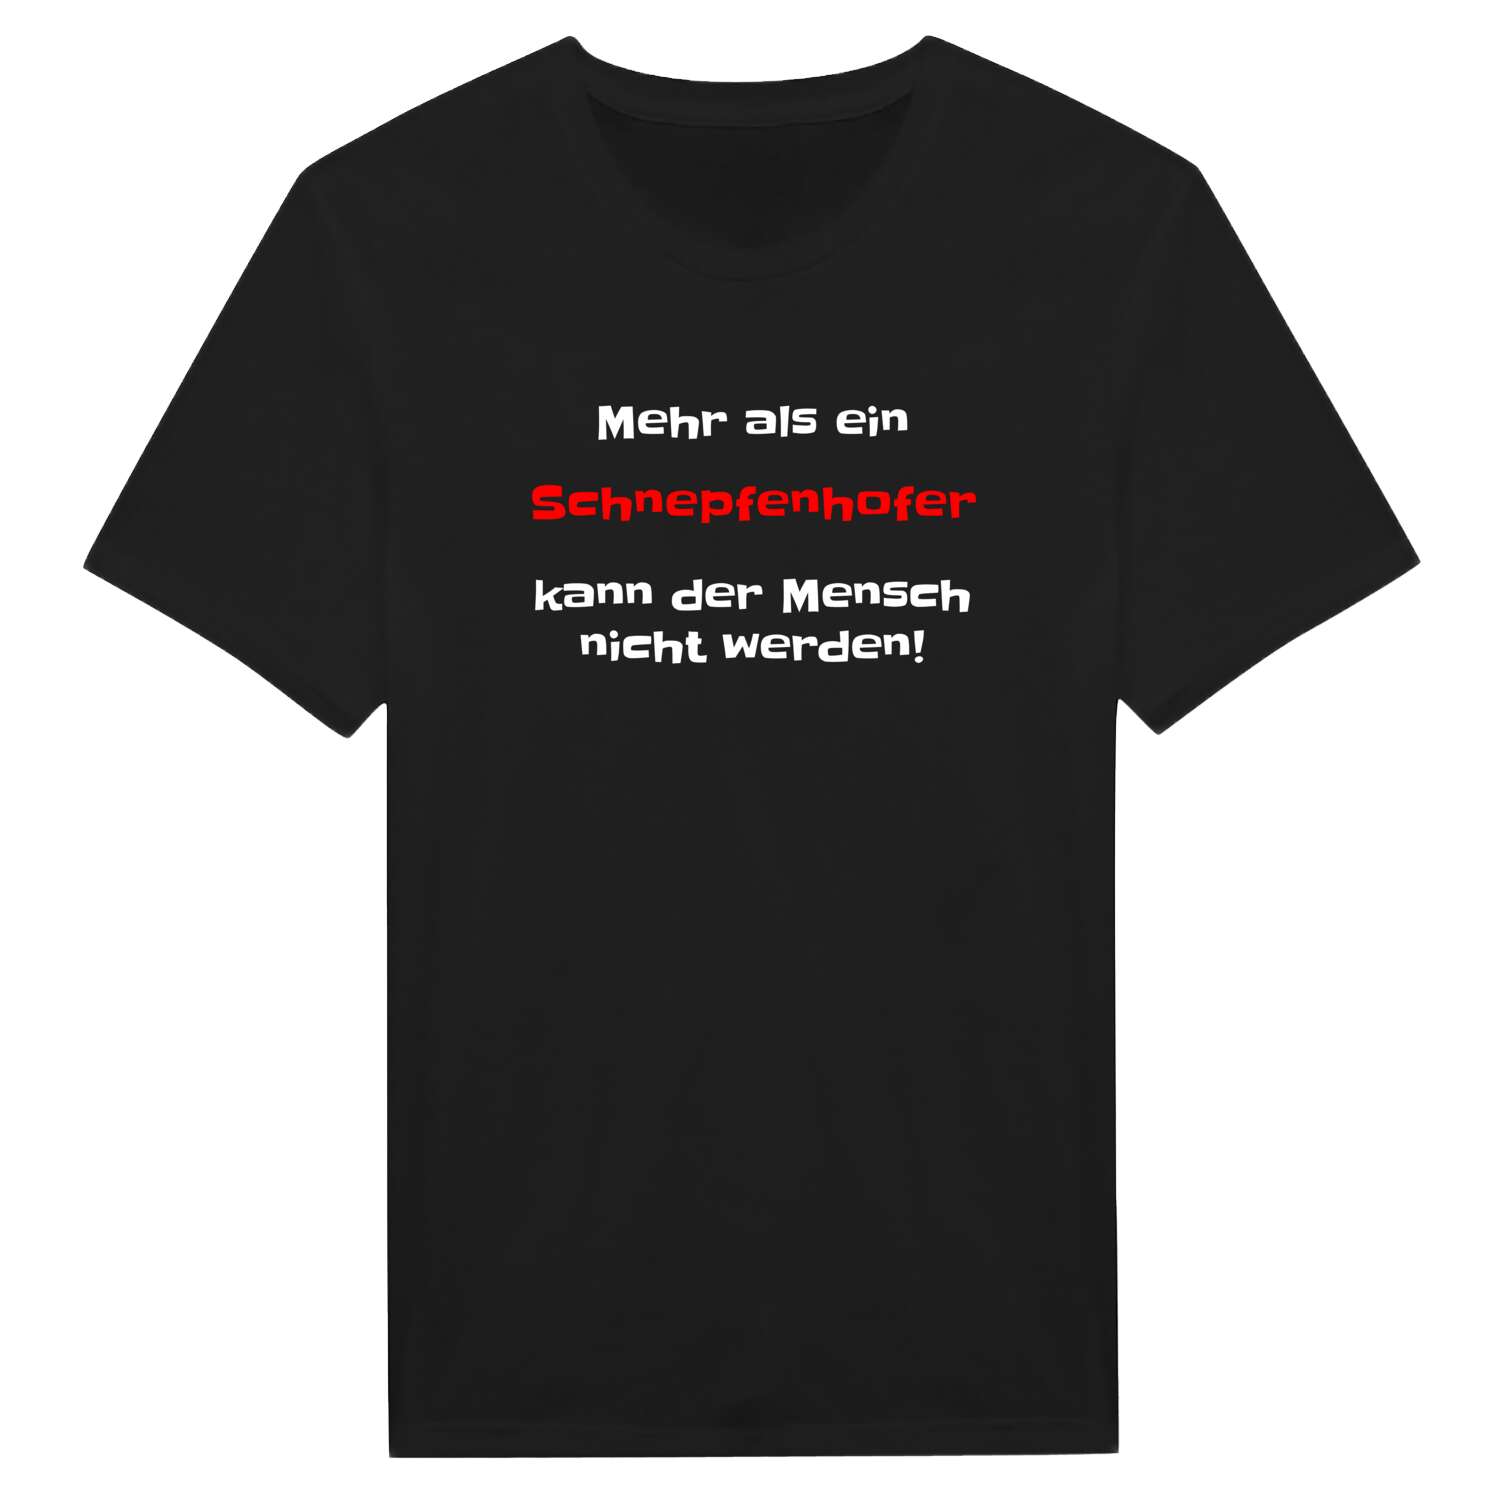 Schnepfenhof T-Shirt »Mehr als ein«